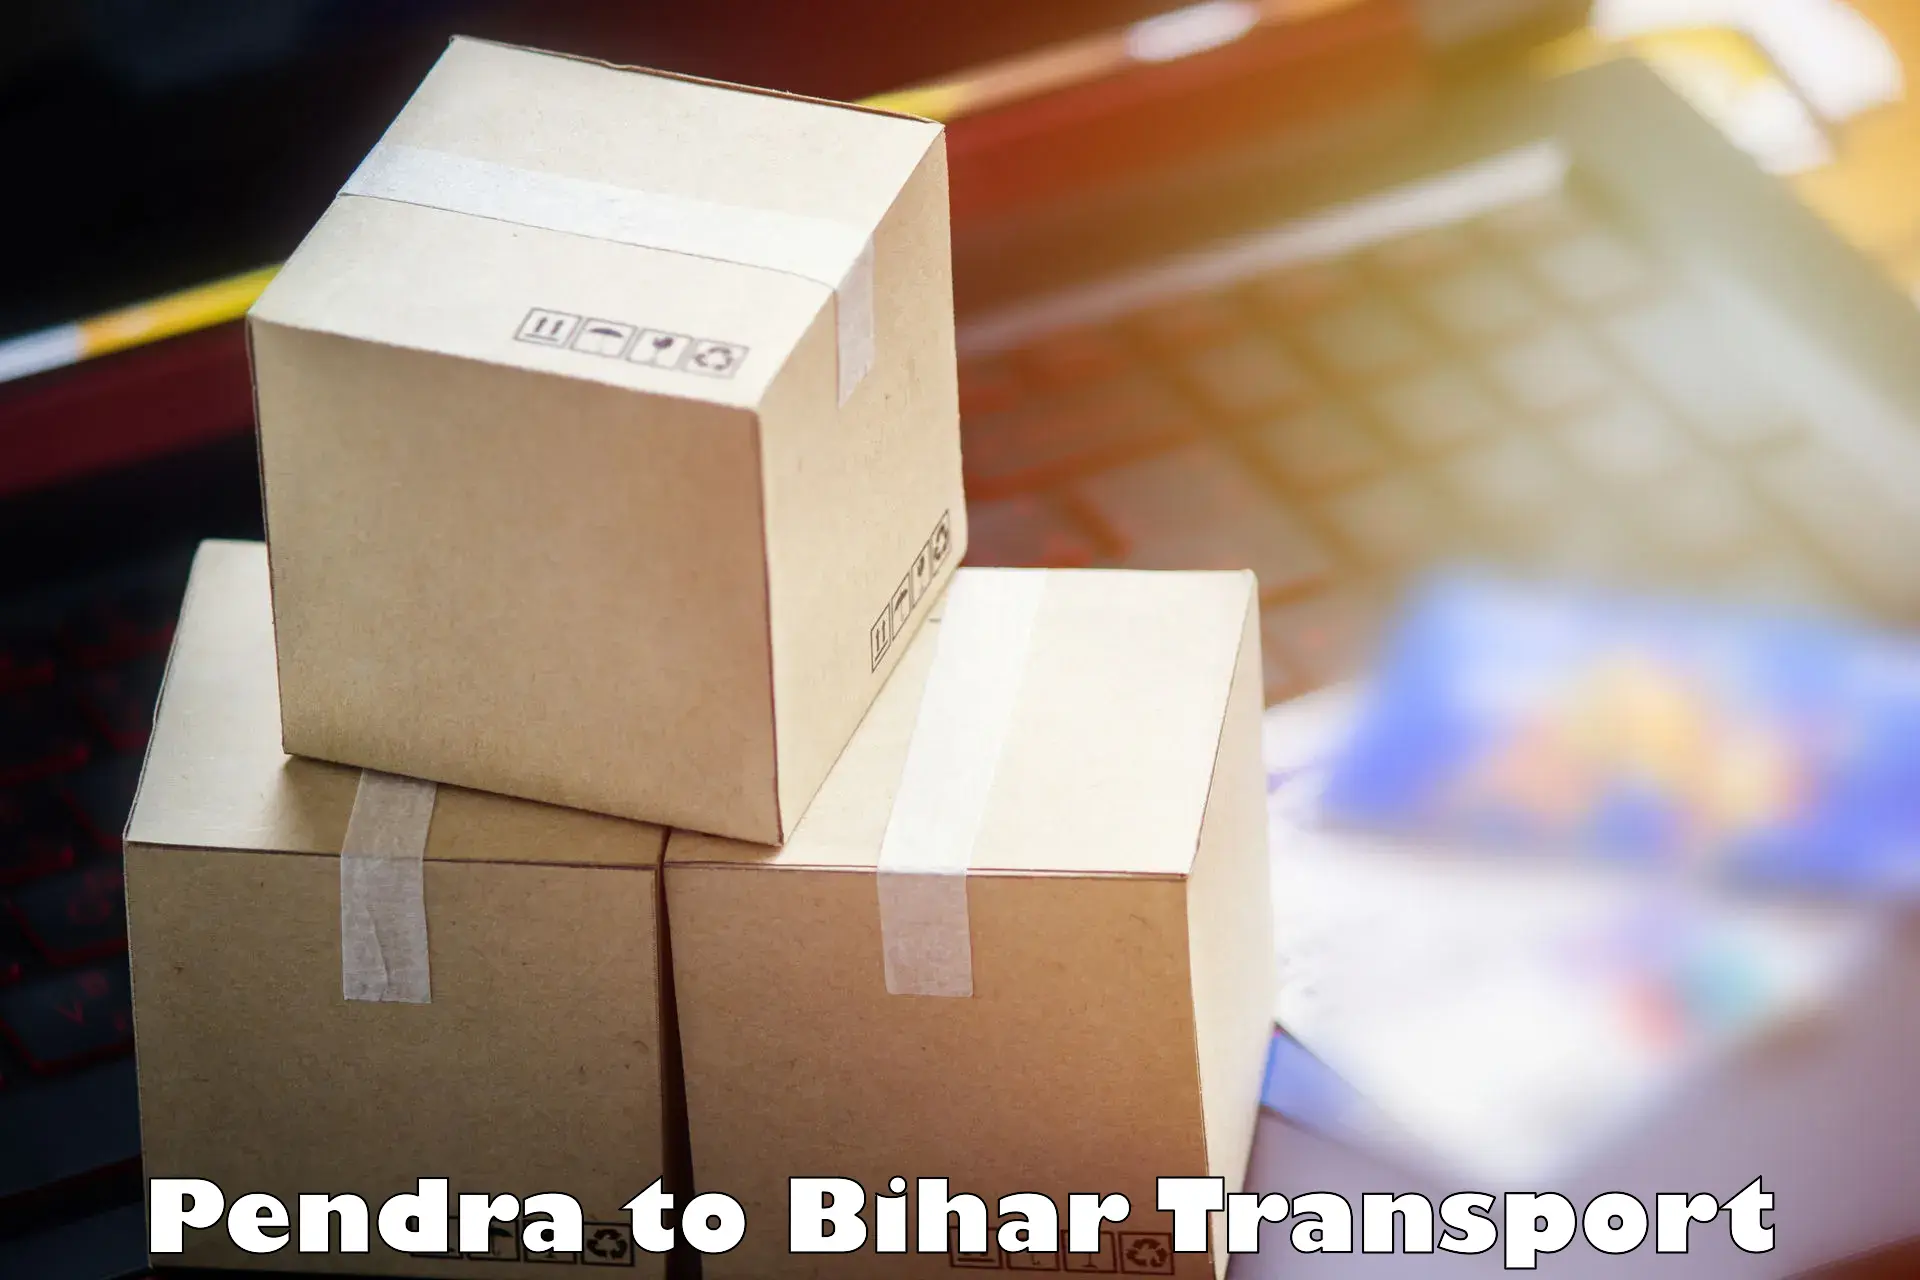 Delivery service Pendra to Mojharia